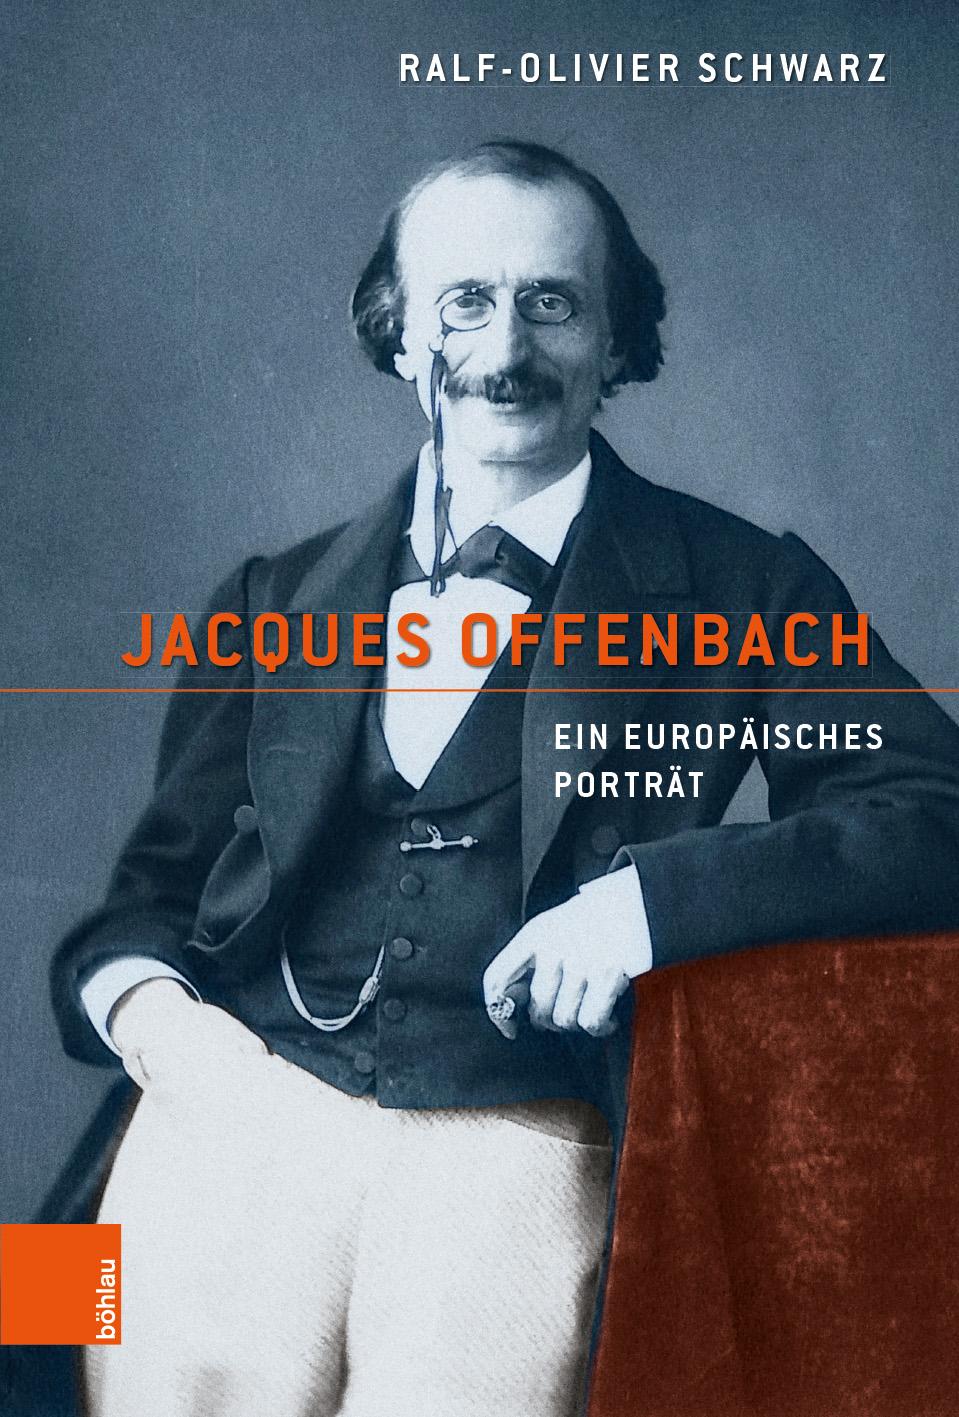 Jacques Offenbach: Ein europaisches Portrat Ralf-Olivier Schwarz Author